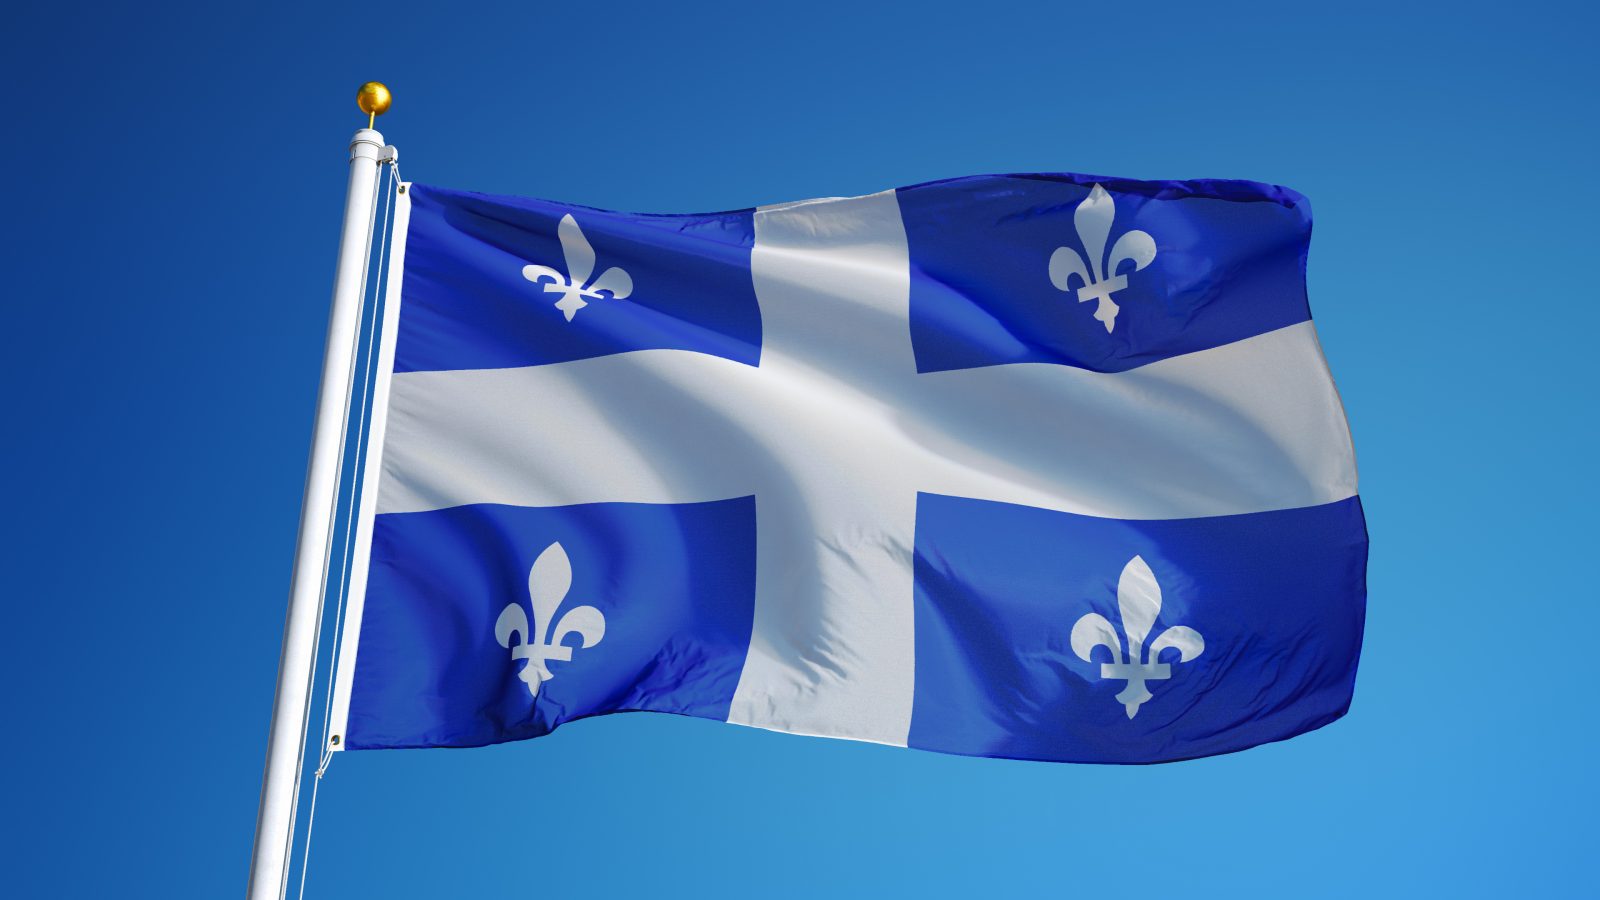 Le Journal Saint-François  Le 21 janvier, on célèbre le drapeau du Québec